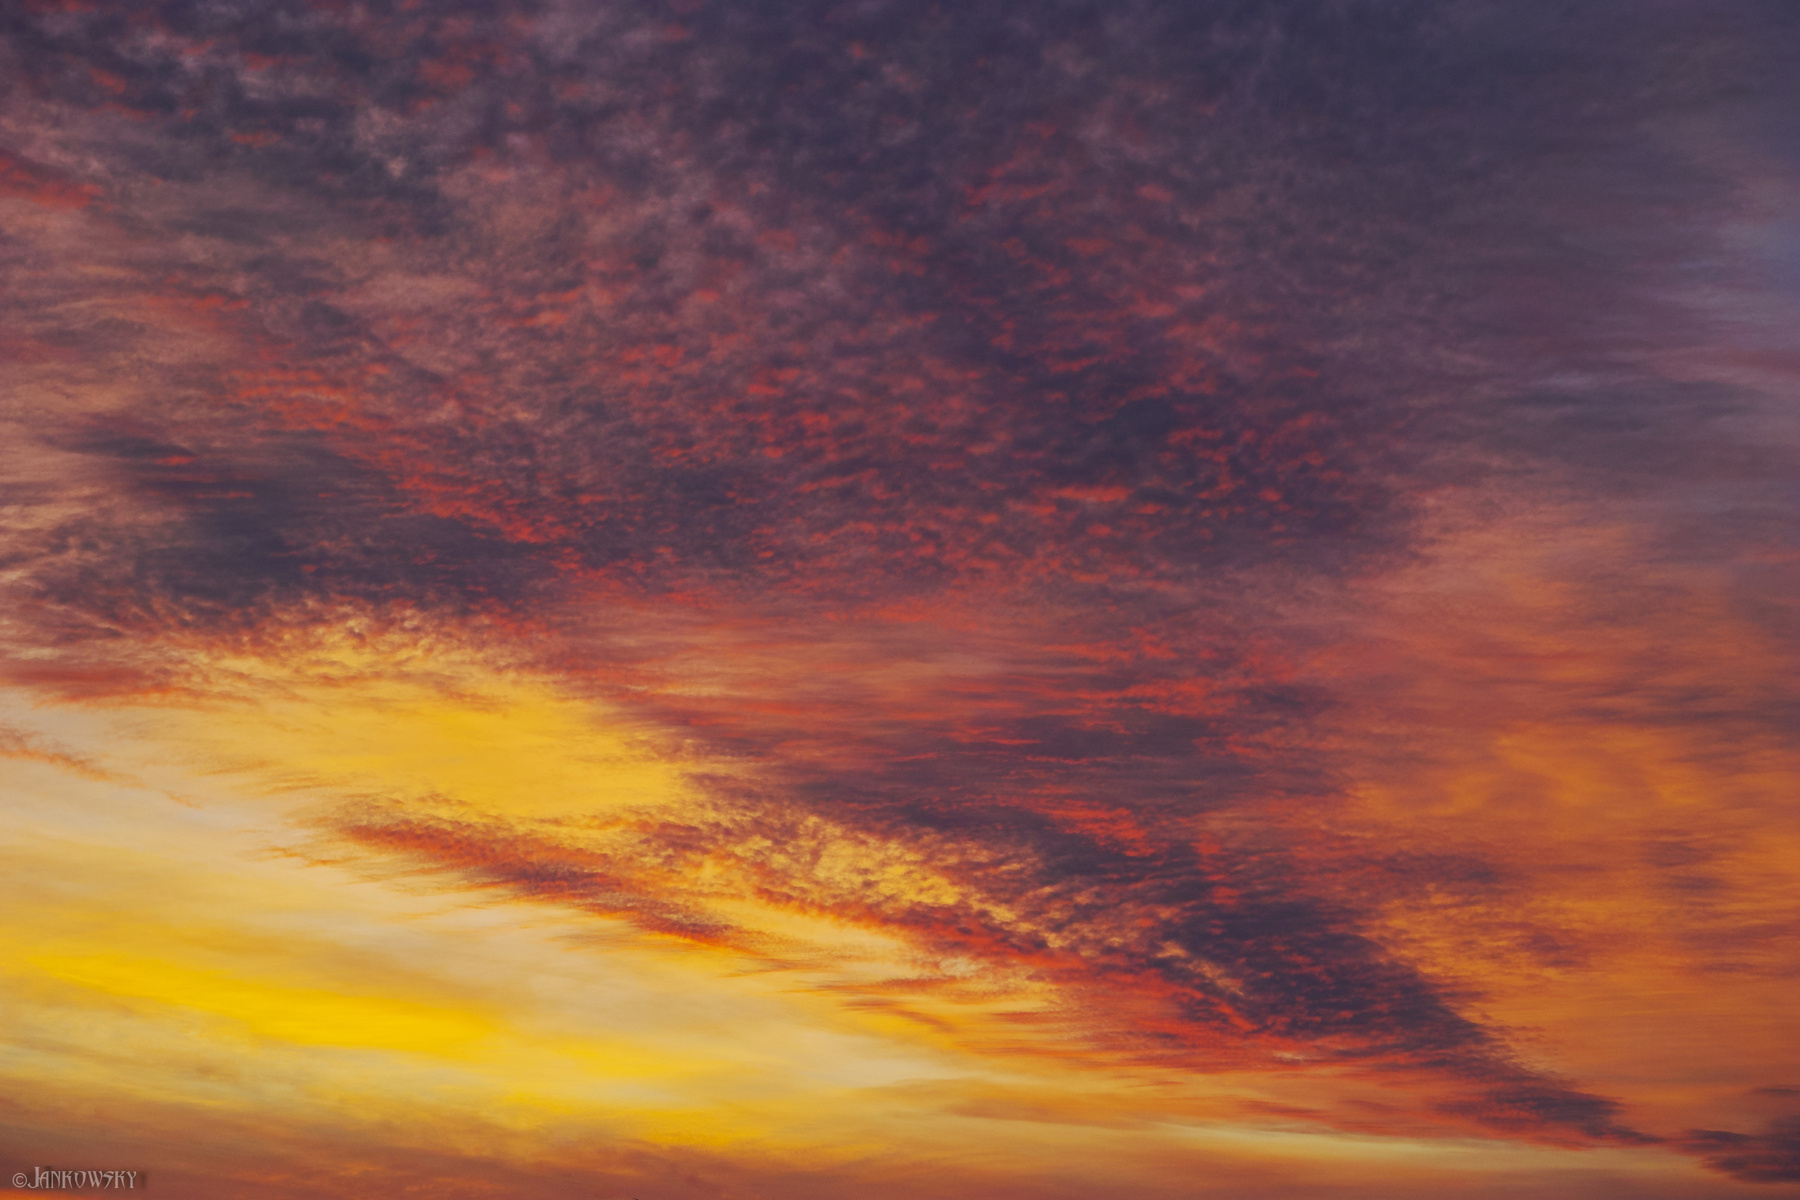 7.12.20 Foveon-безумие омского неба - опус 2 омск небо закат морозный вырвиглазный цвет кислотный foveon рендеринг перистые облака краски неба Sigma dp3 Quattro